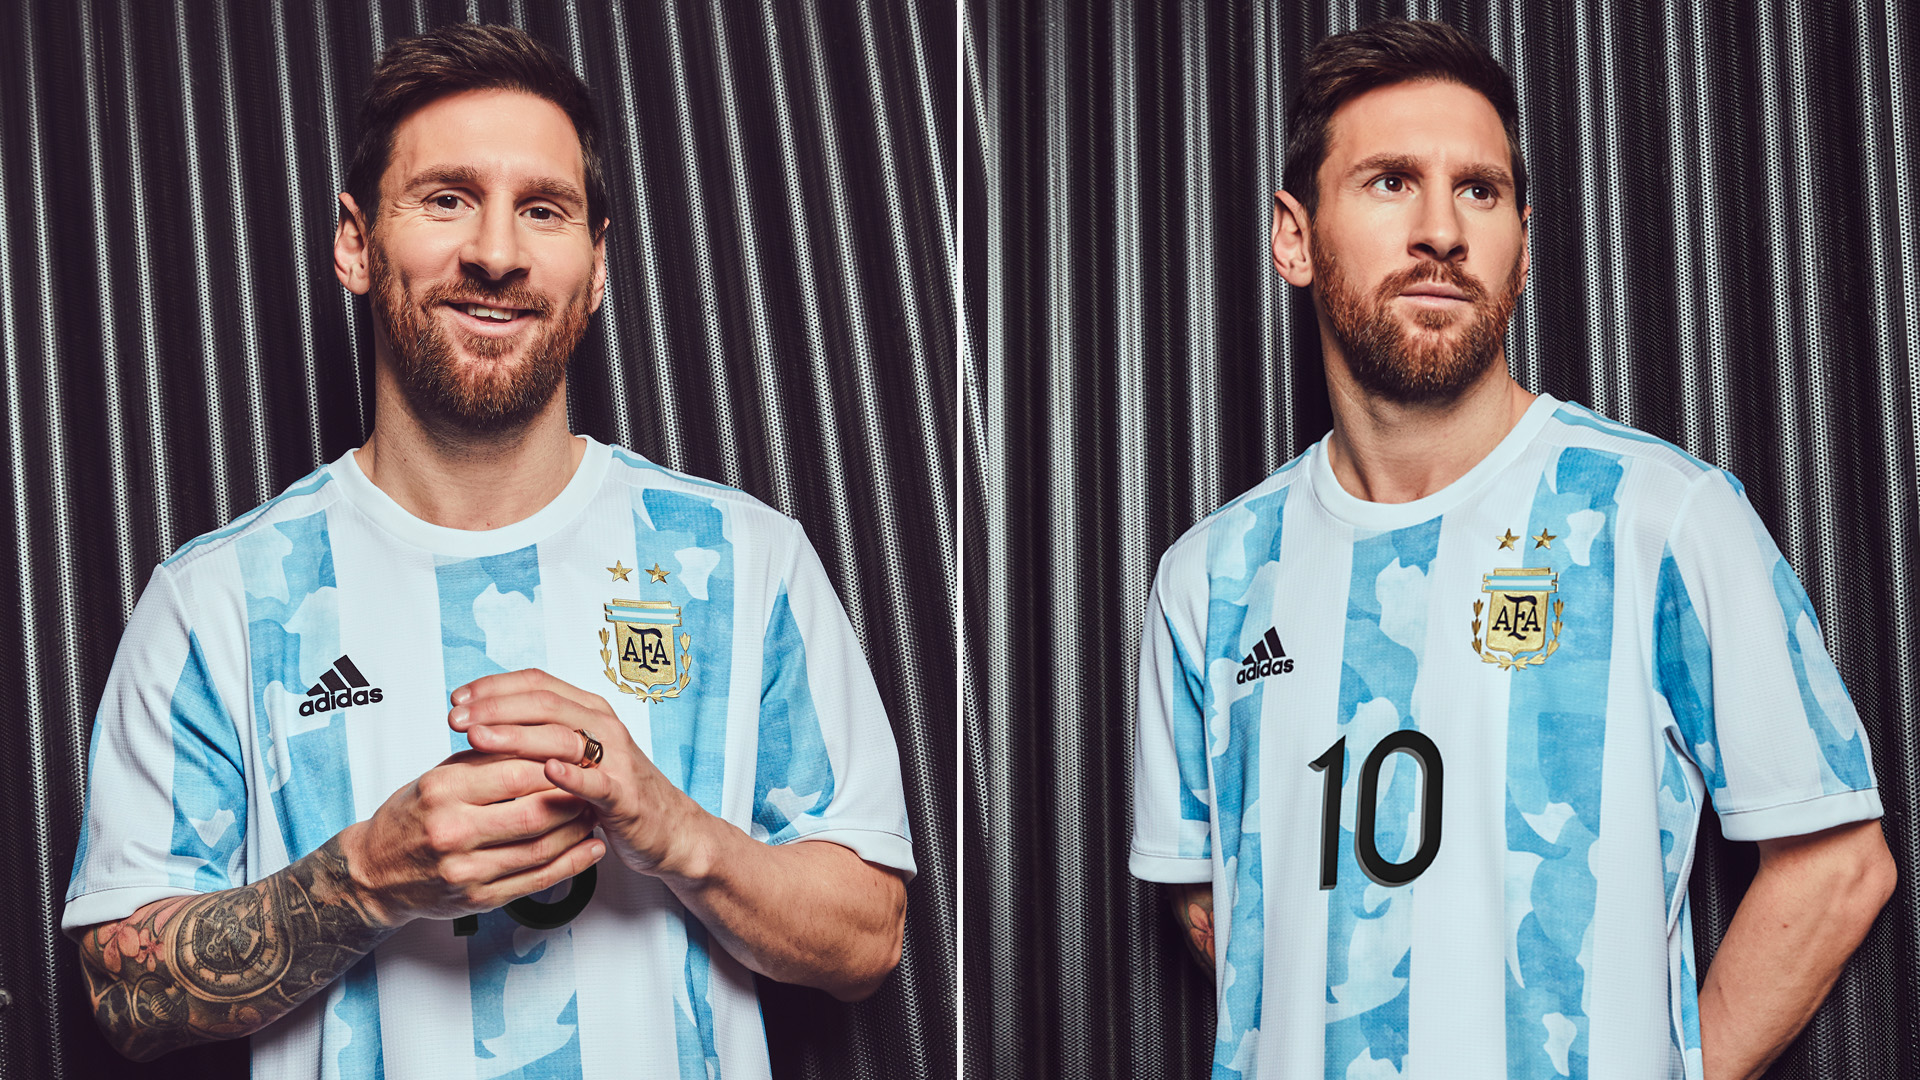 La increíble cantidad de camisetas Messi que arma la utilería de la Selección cada partido - Infobae